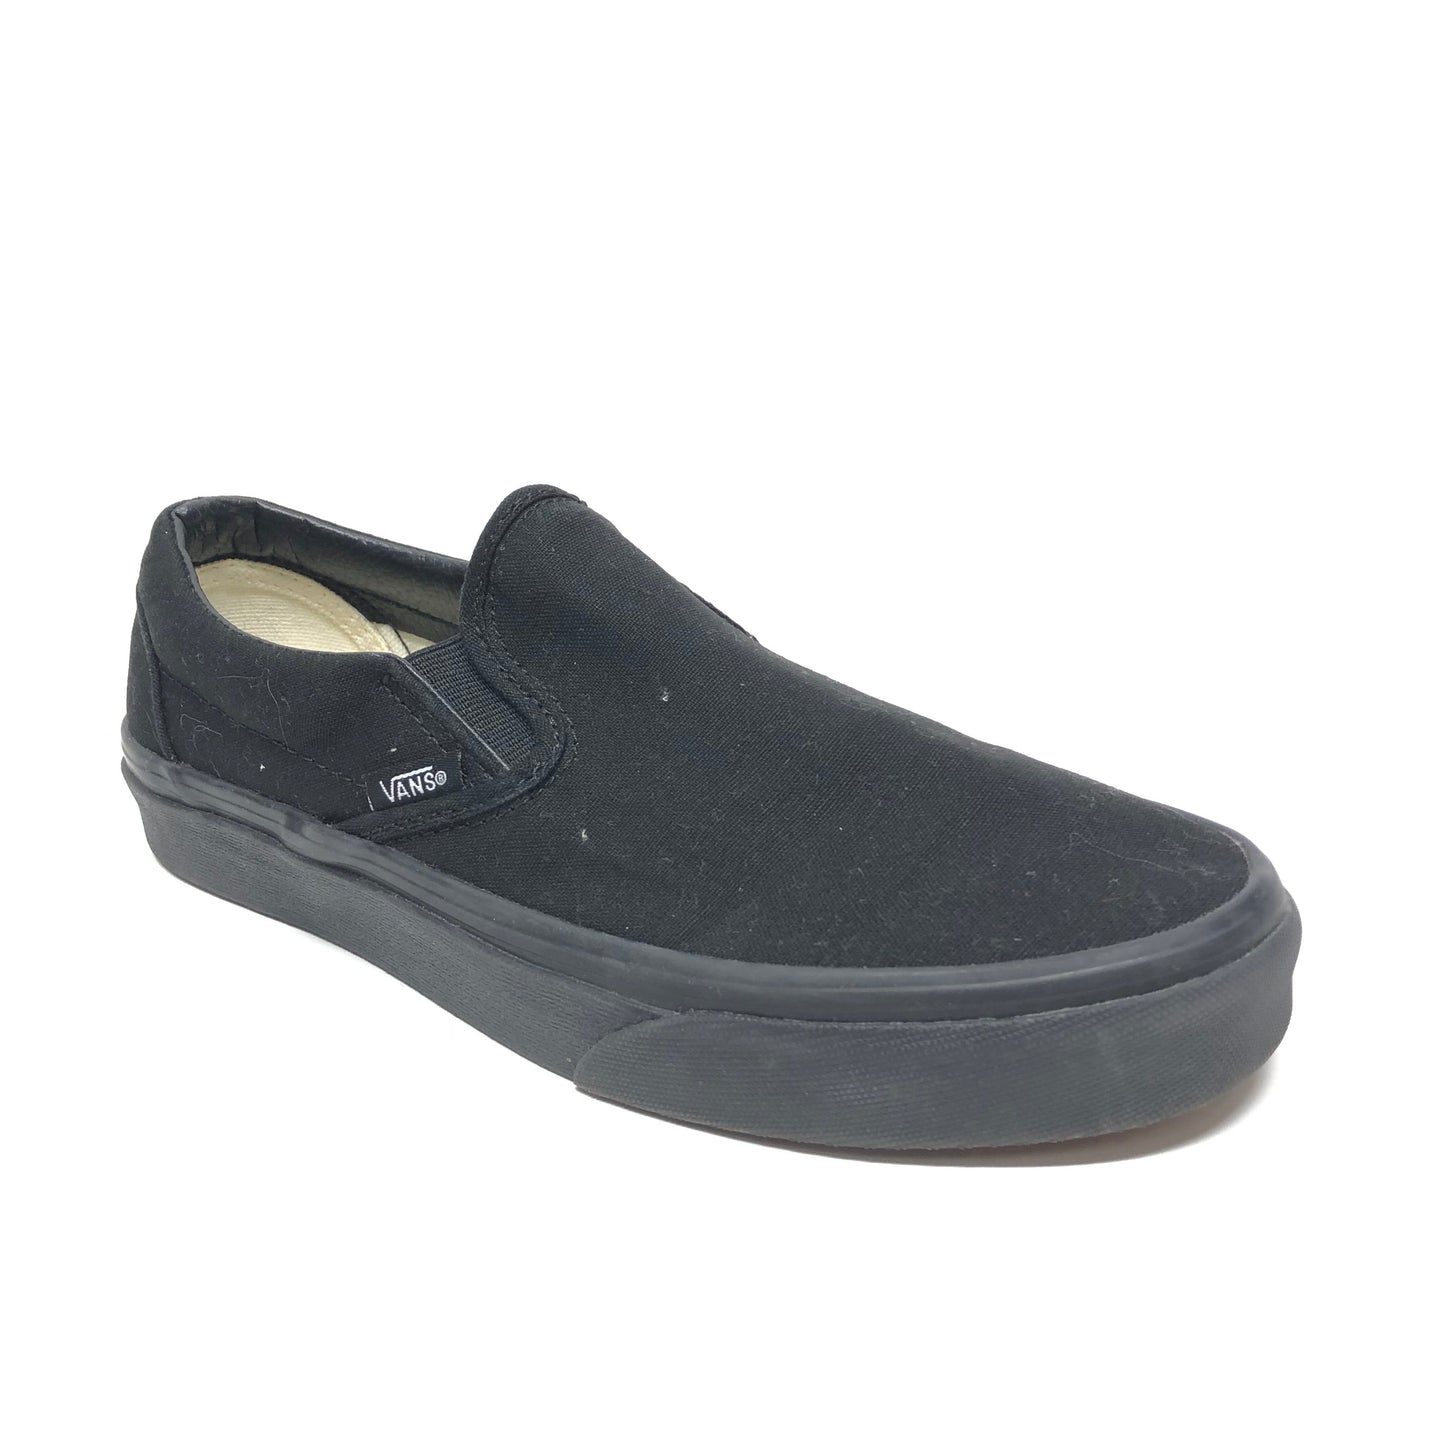 Black Shoes Flats Vans, Size 7.5